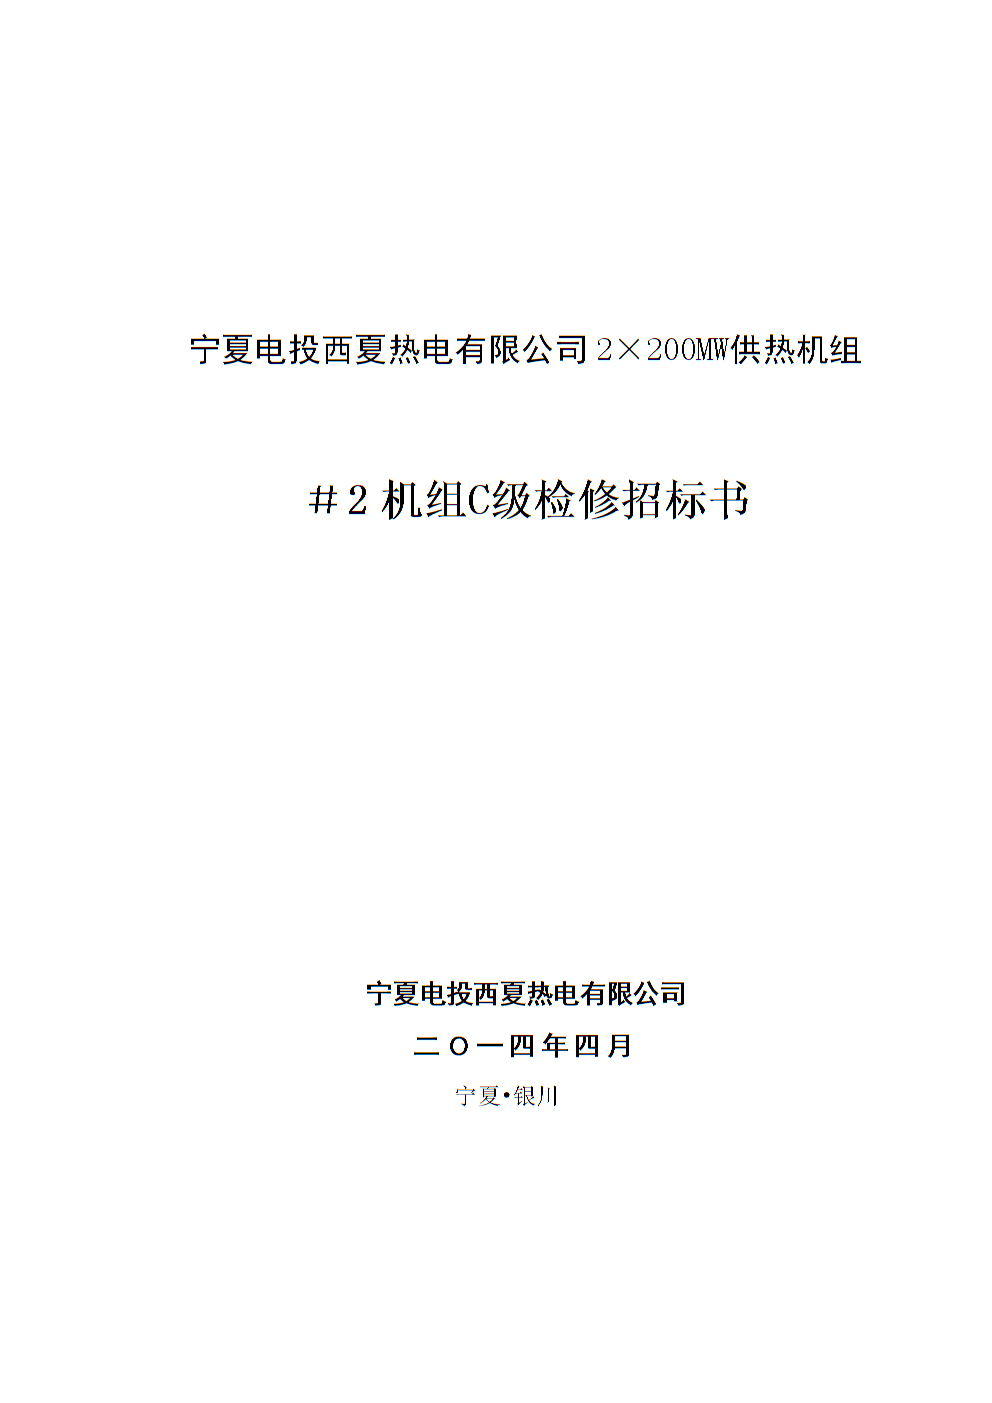 球王会:山西京能吕临发电有限公司2022年1号机组汽机化学系统C级检修招标公告